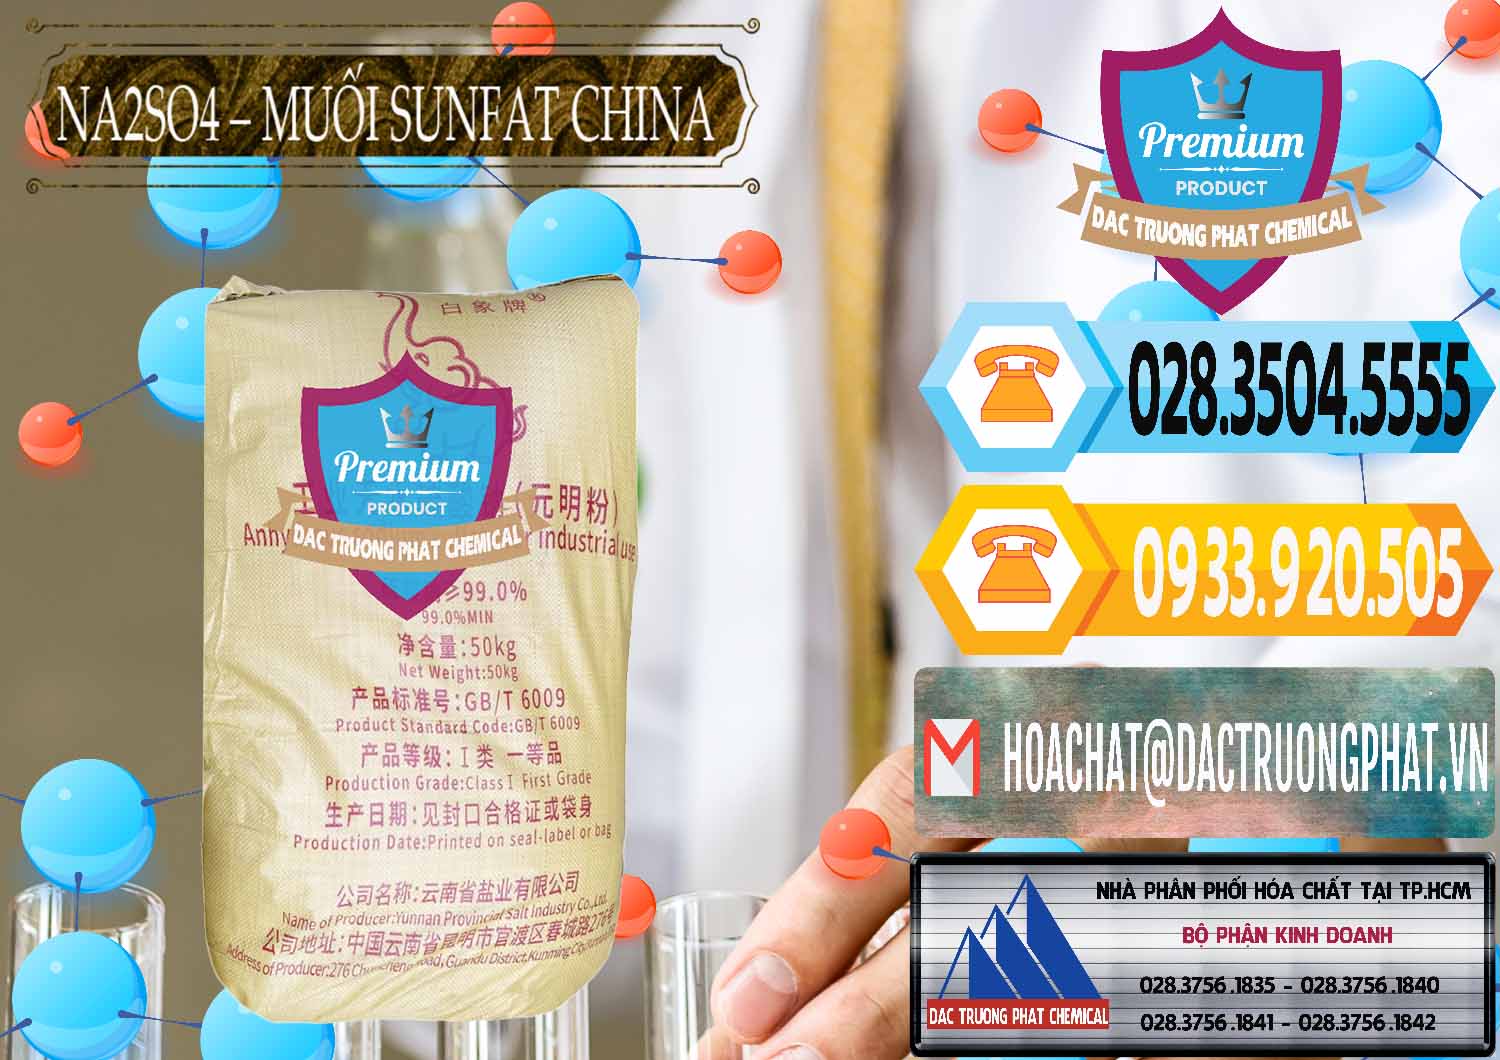 Cty chuyên cung cấp _ bán Sodium Sulphate - Muối Sunfat Na2SO4 Logo Con Voi Trung Quốc China - 0409 - Nơi cung cấp và phân phối hóa chất tại TP.HCM - hoachattayrua.net